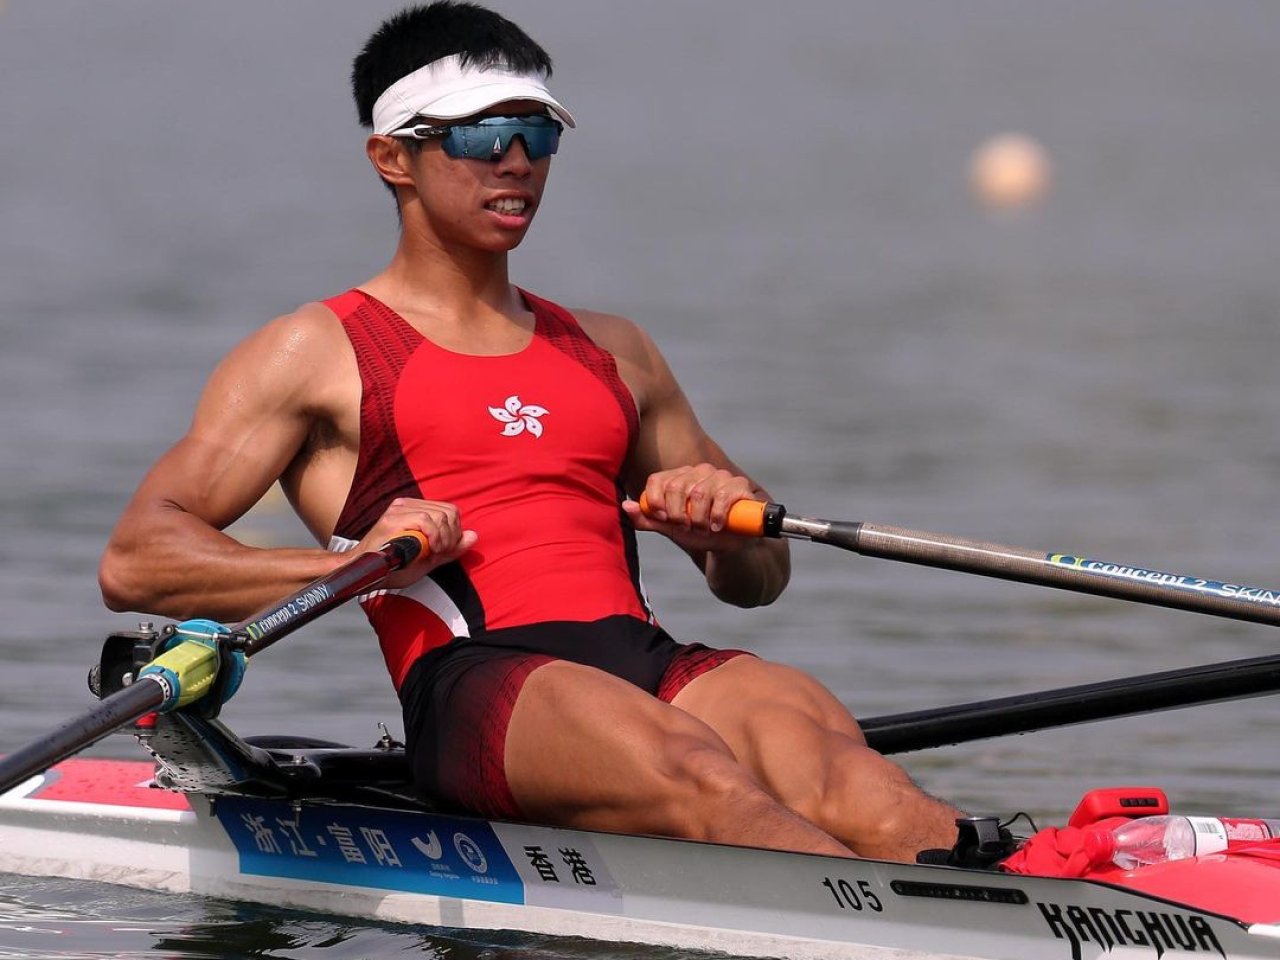 Rower Chiu Hin-chun will race in repechage